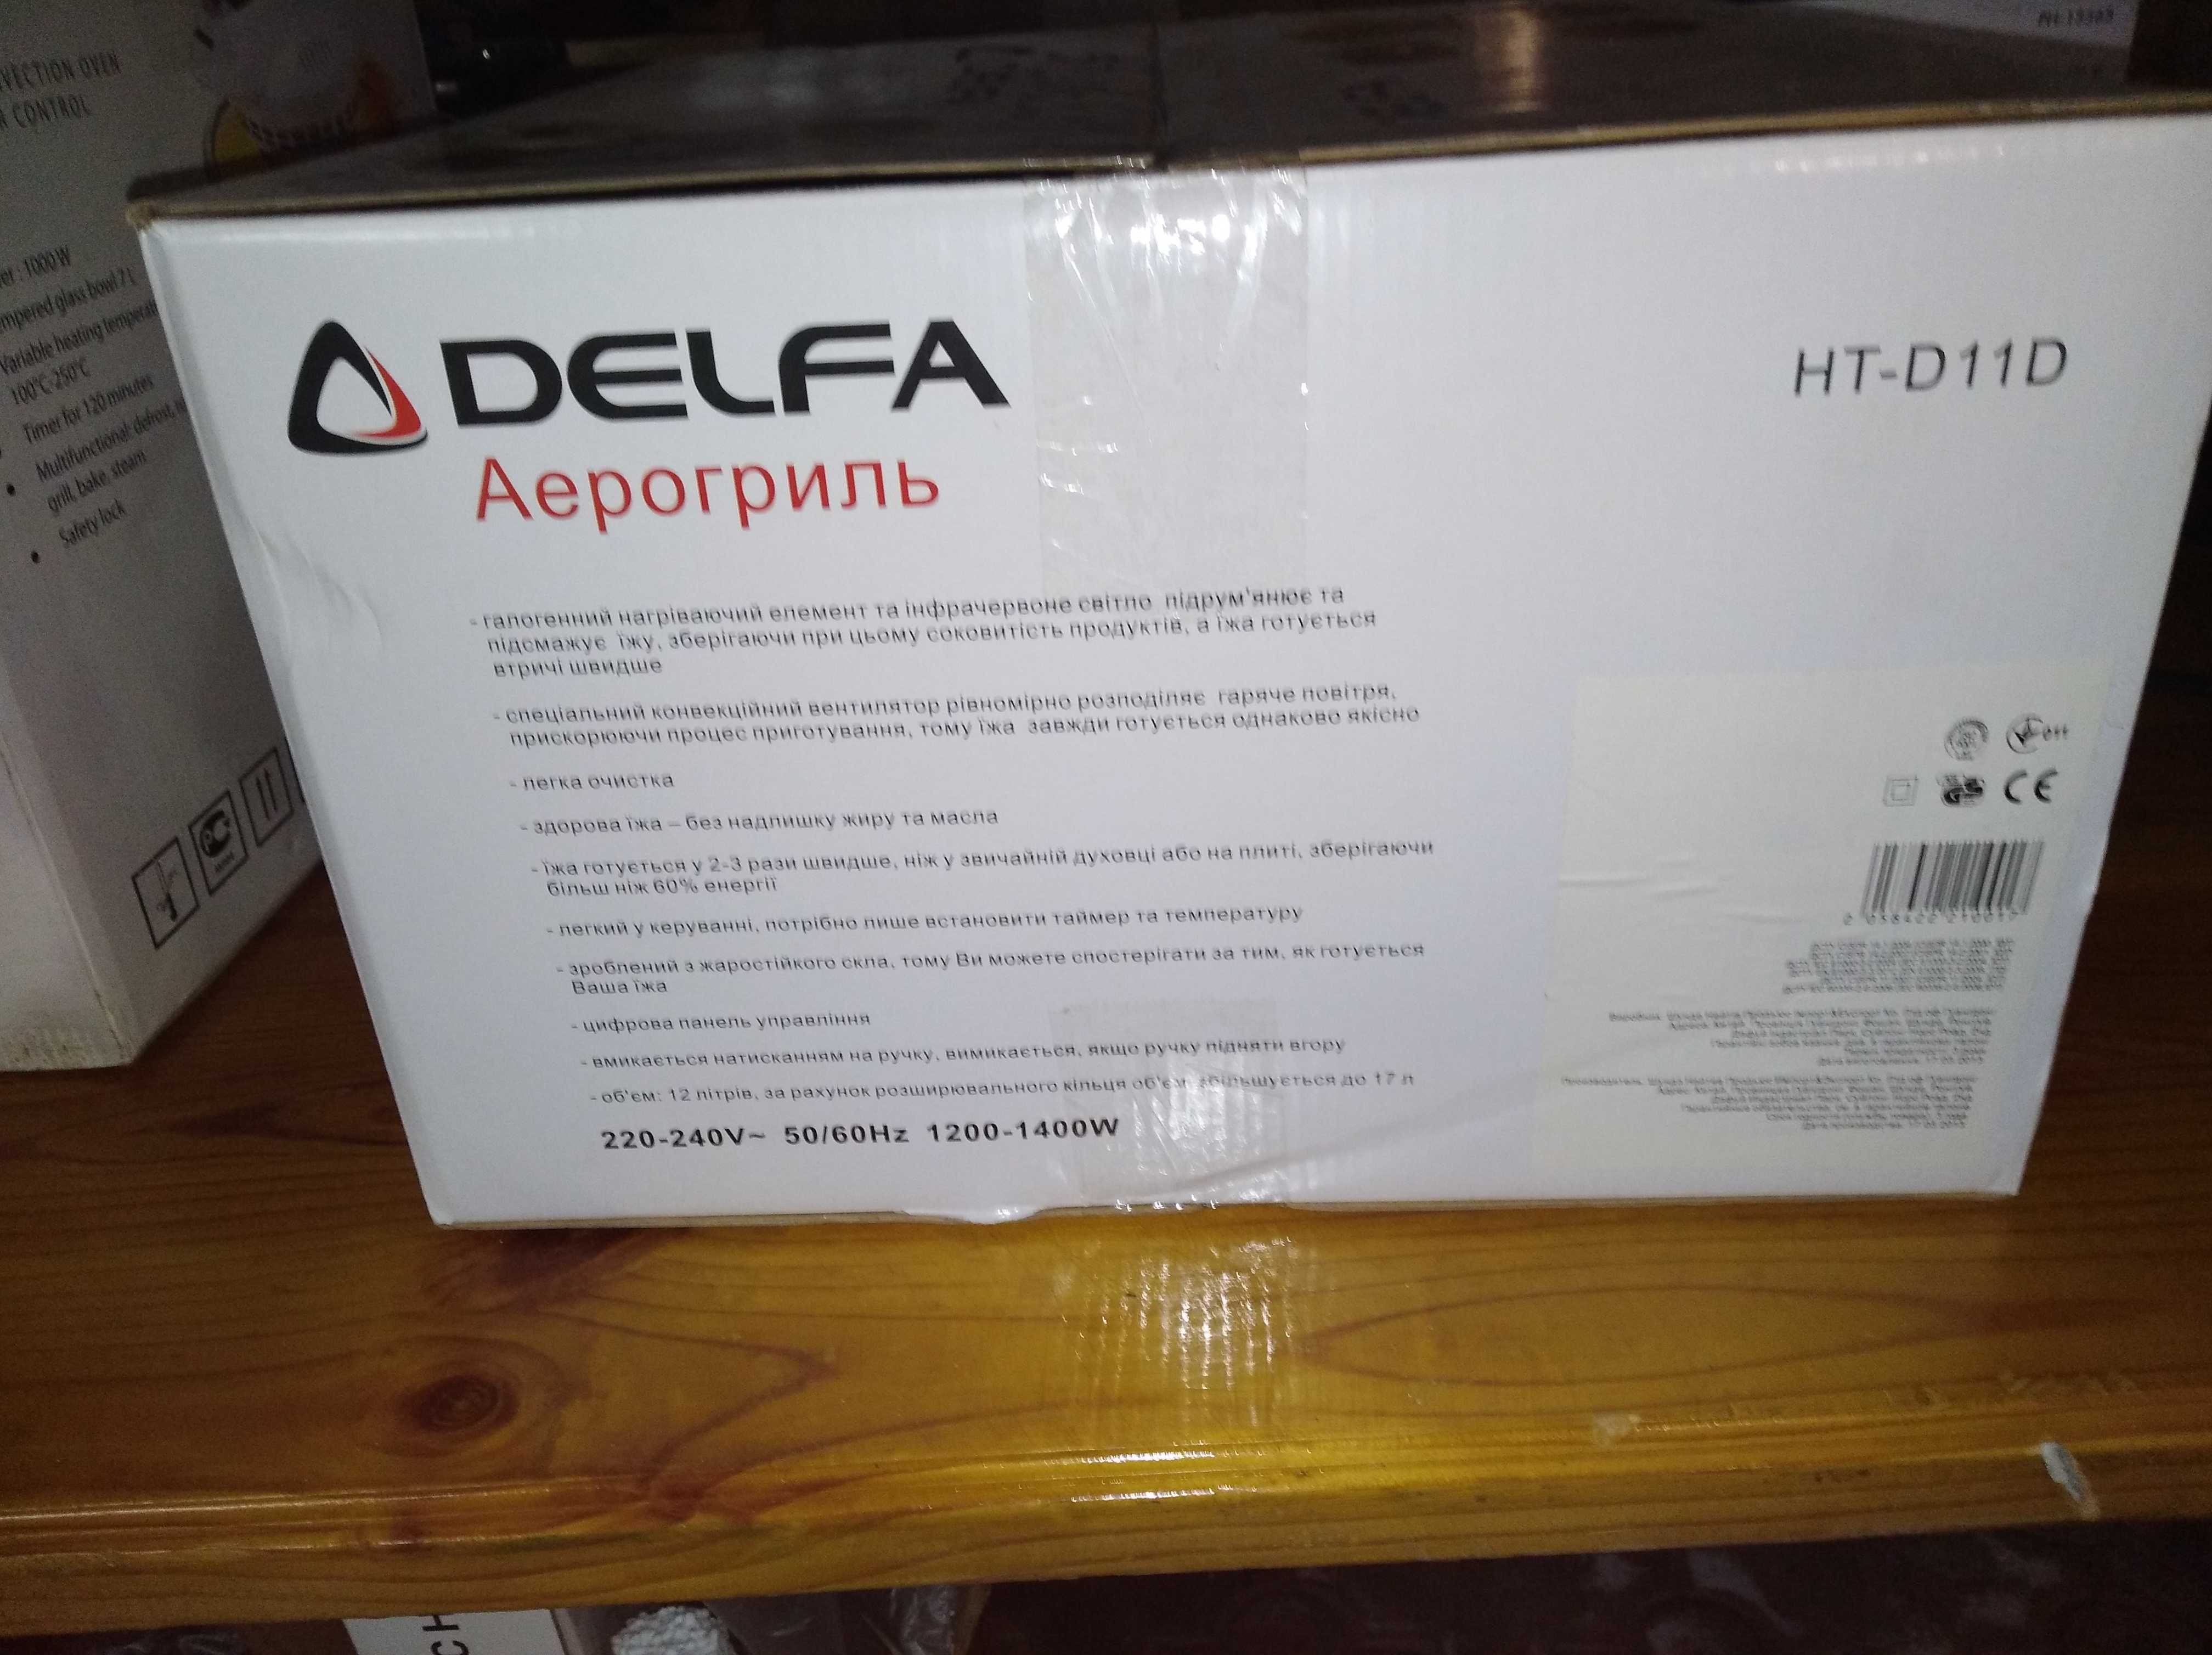 Аерогриль DELFA HT-D11D